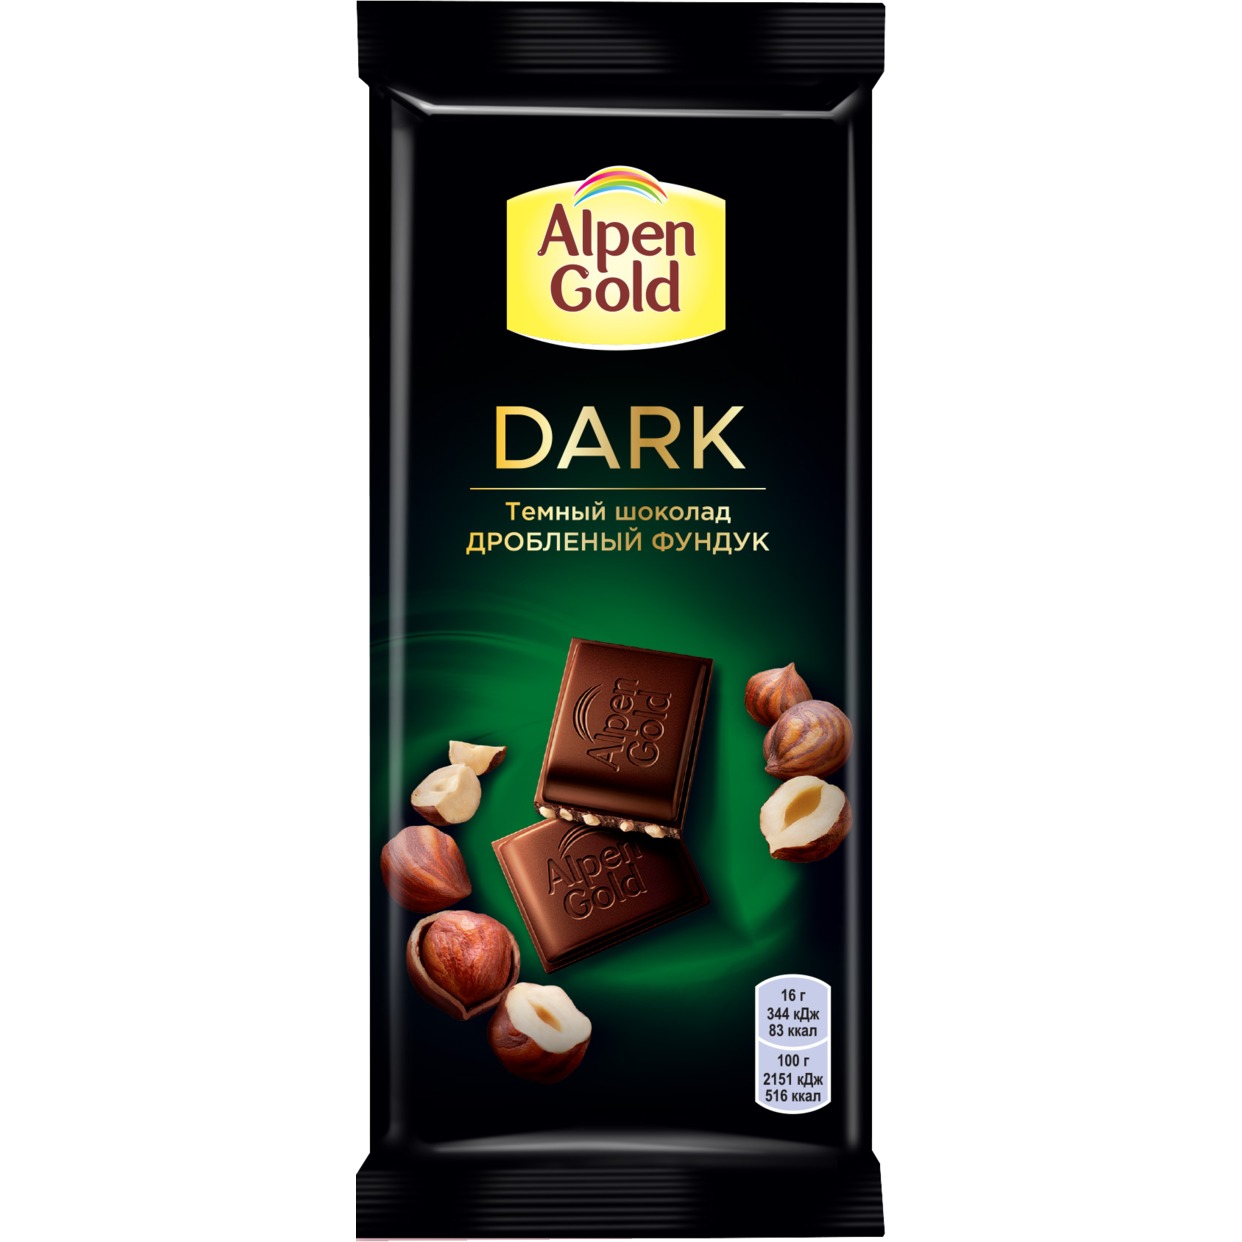 Шоколад темный Alpen Gold Альпен Гольд с дробленым фундуком, 80г по акции в Пятерочке